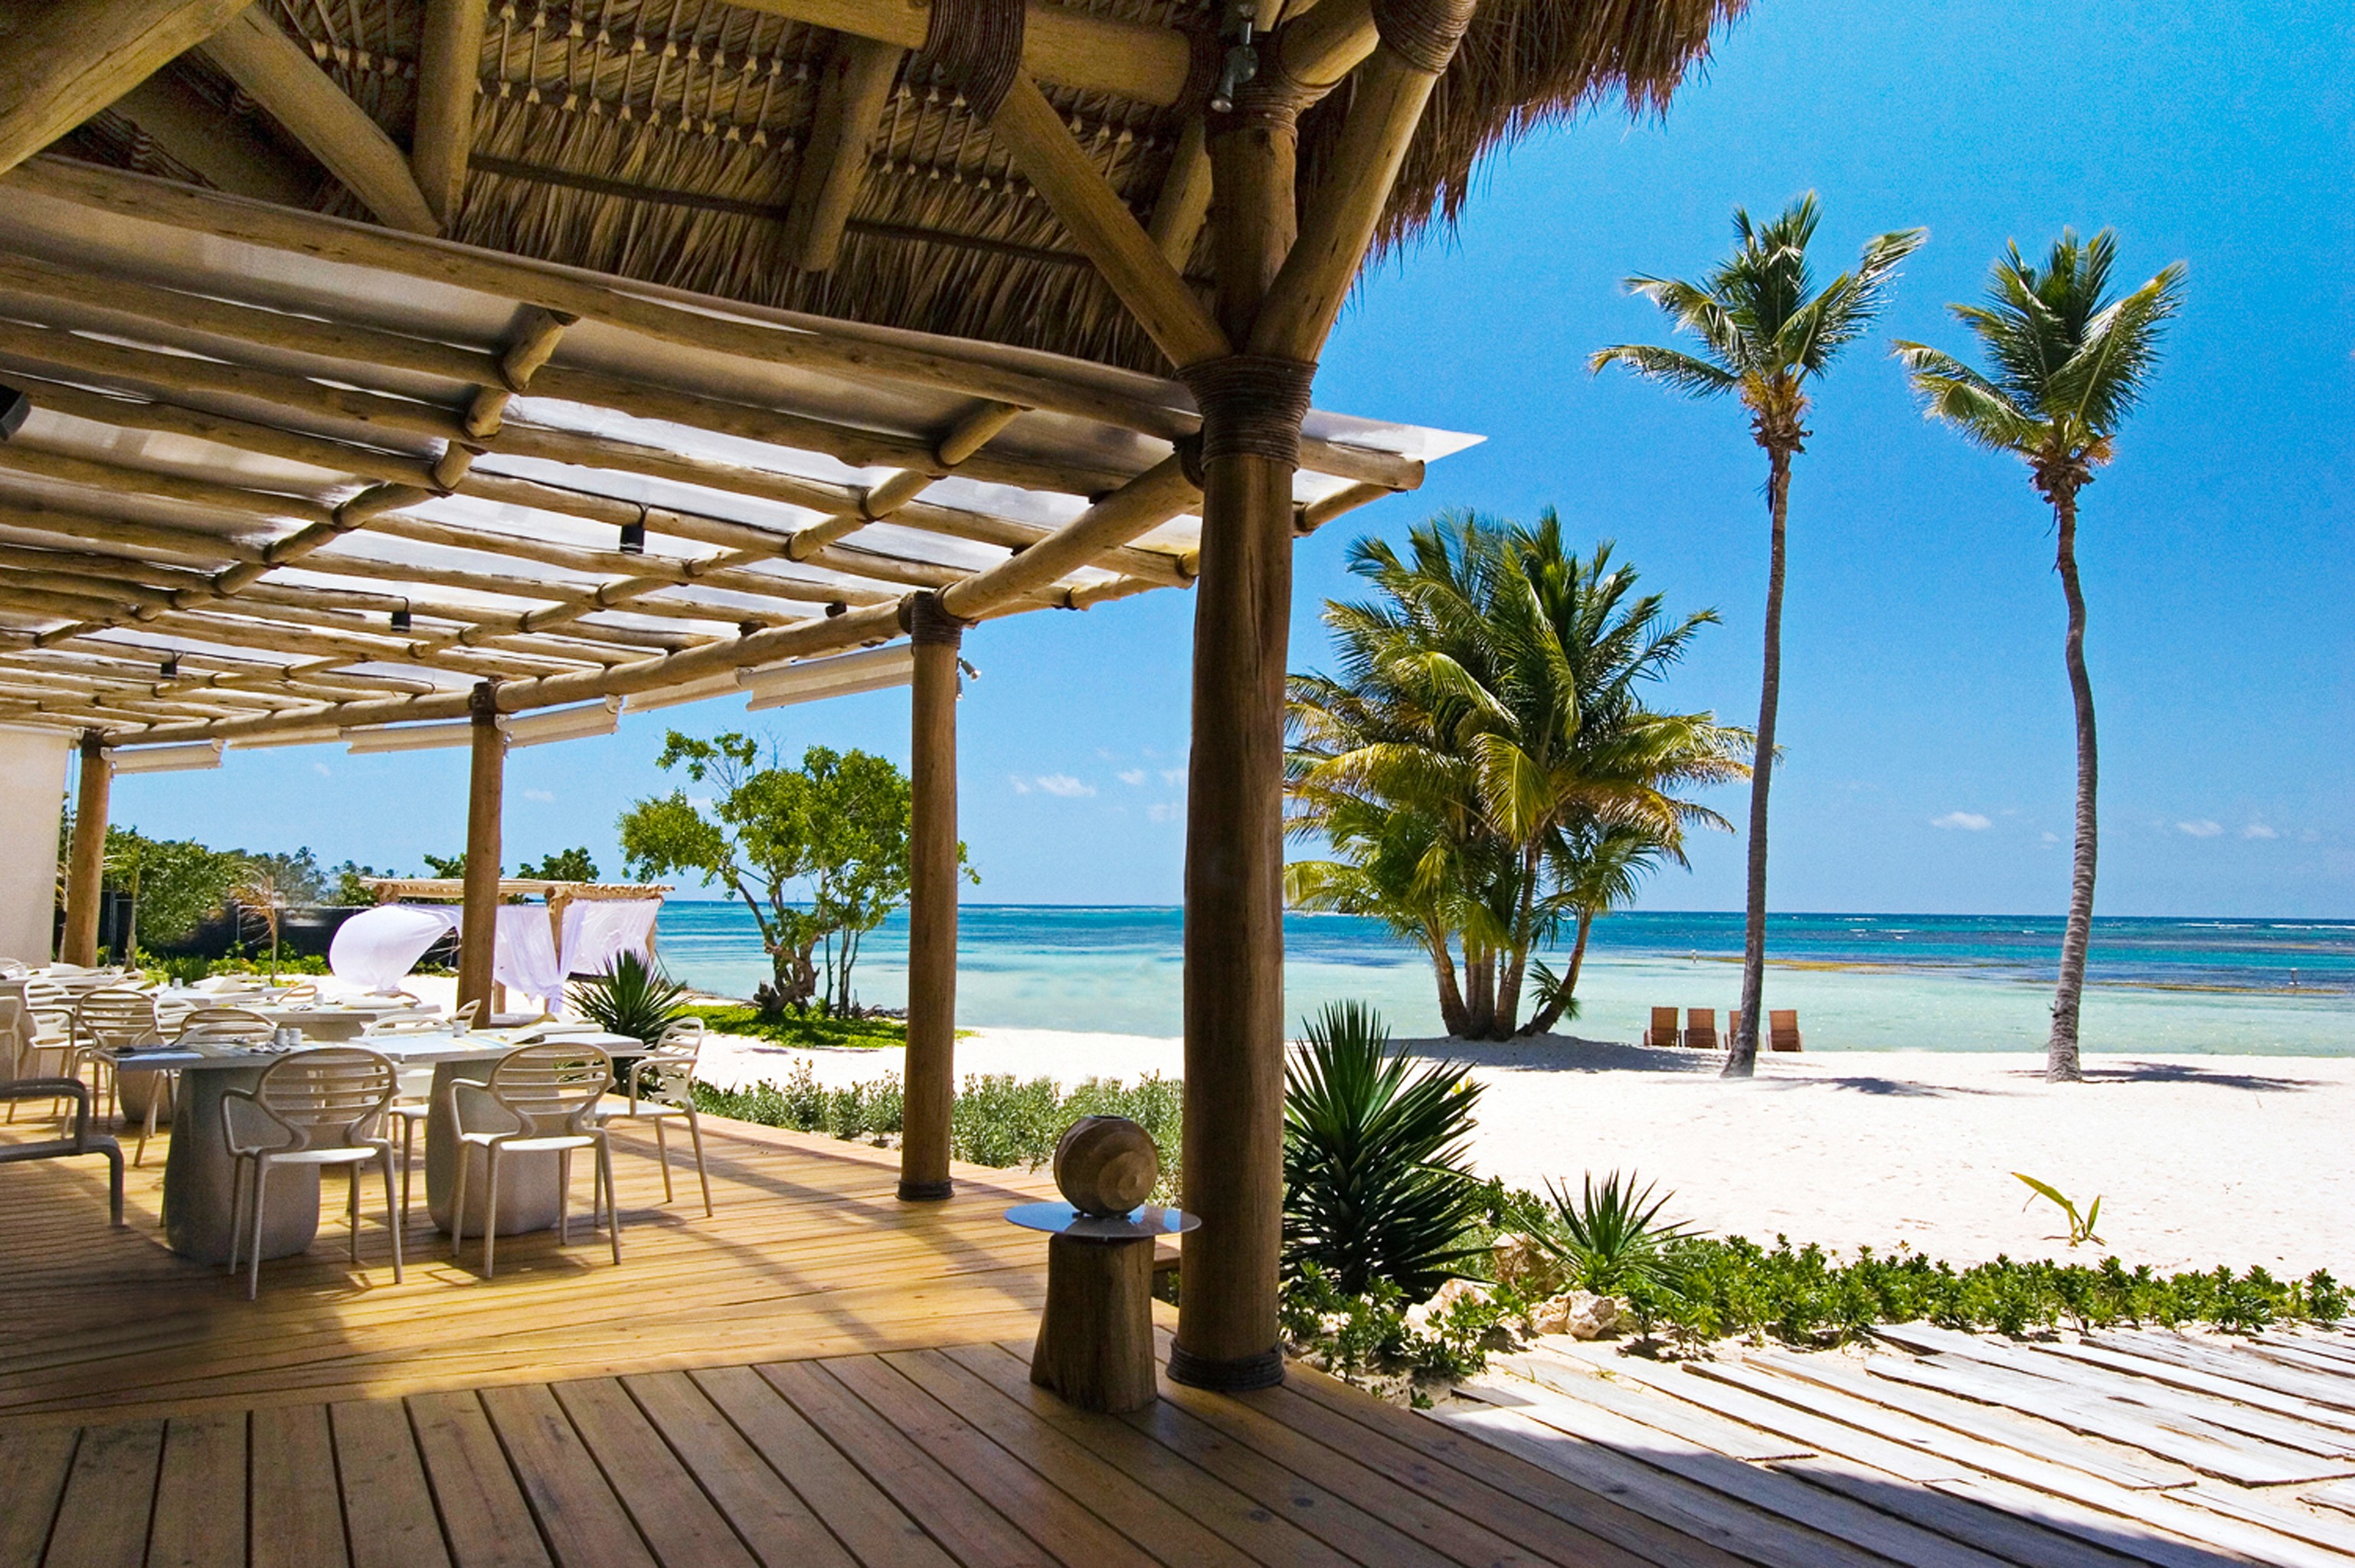 Hotel Tortuga Bay, em Punta Cana, projetado por Oscar de la Renta: uma das sugestões do Jetsetter (Foto: Rerprodução)